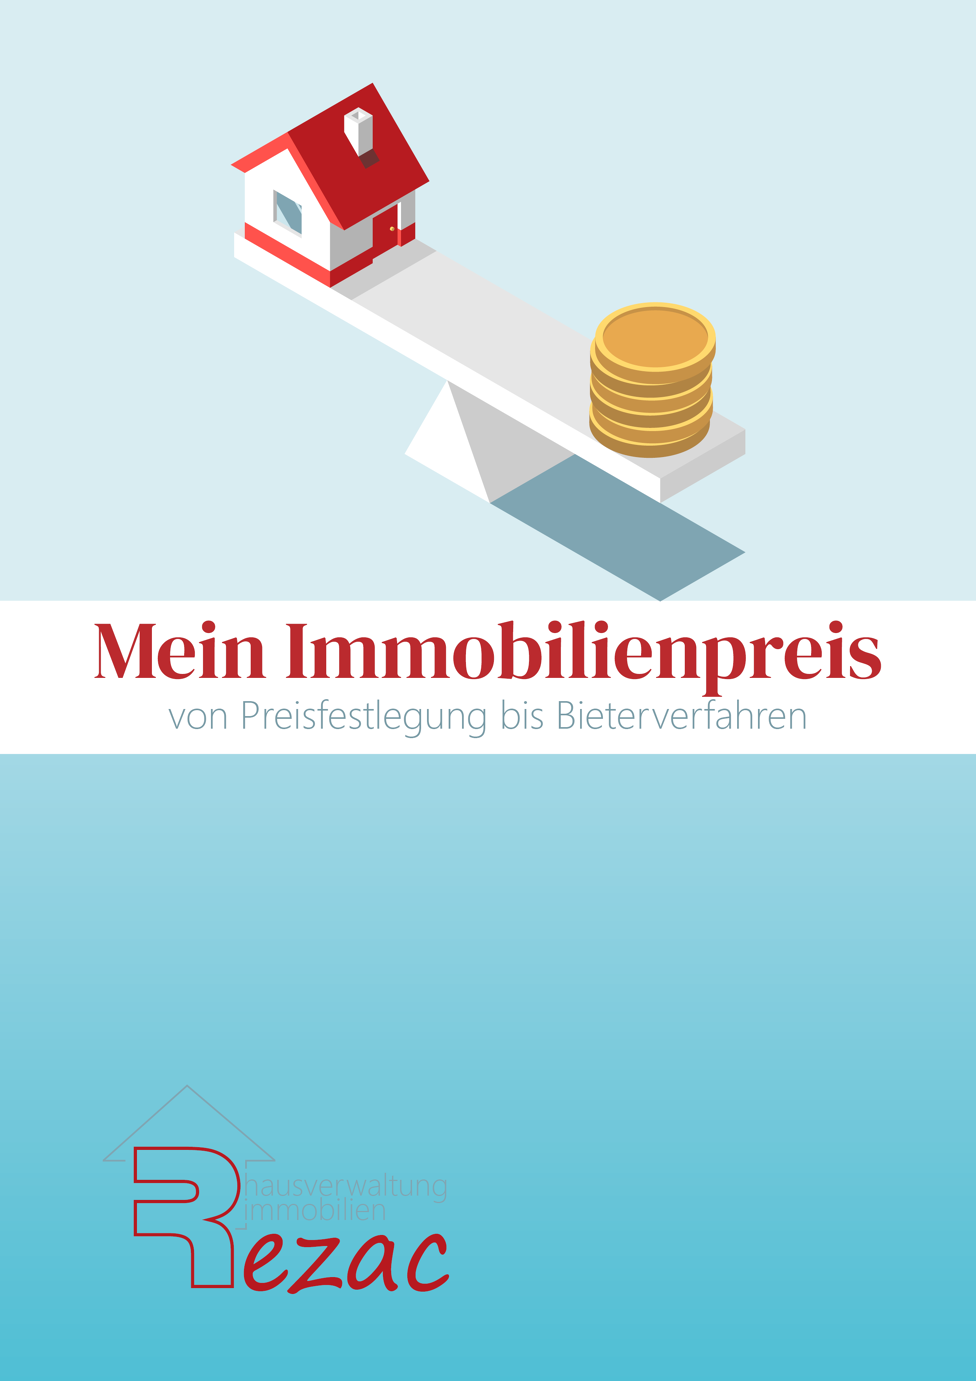 Coverbild des E-Books 'Mein Immobilienpreis von Preisfestlegungen bis Bieterverfahren' von Rezac